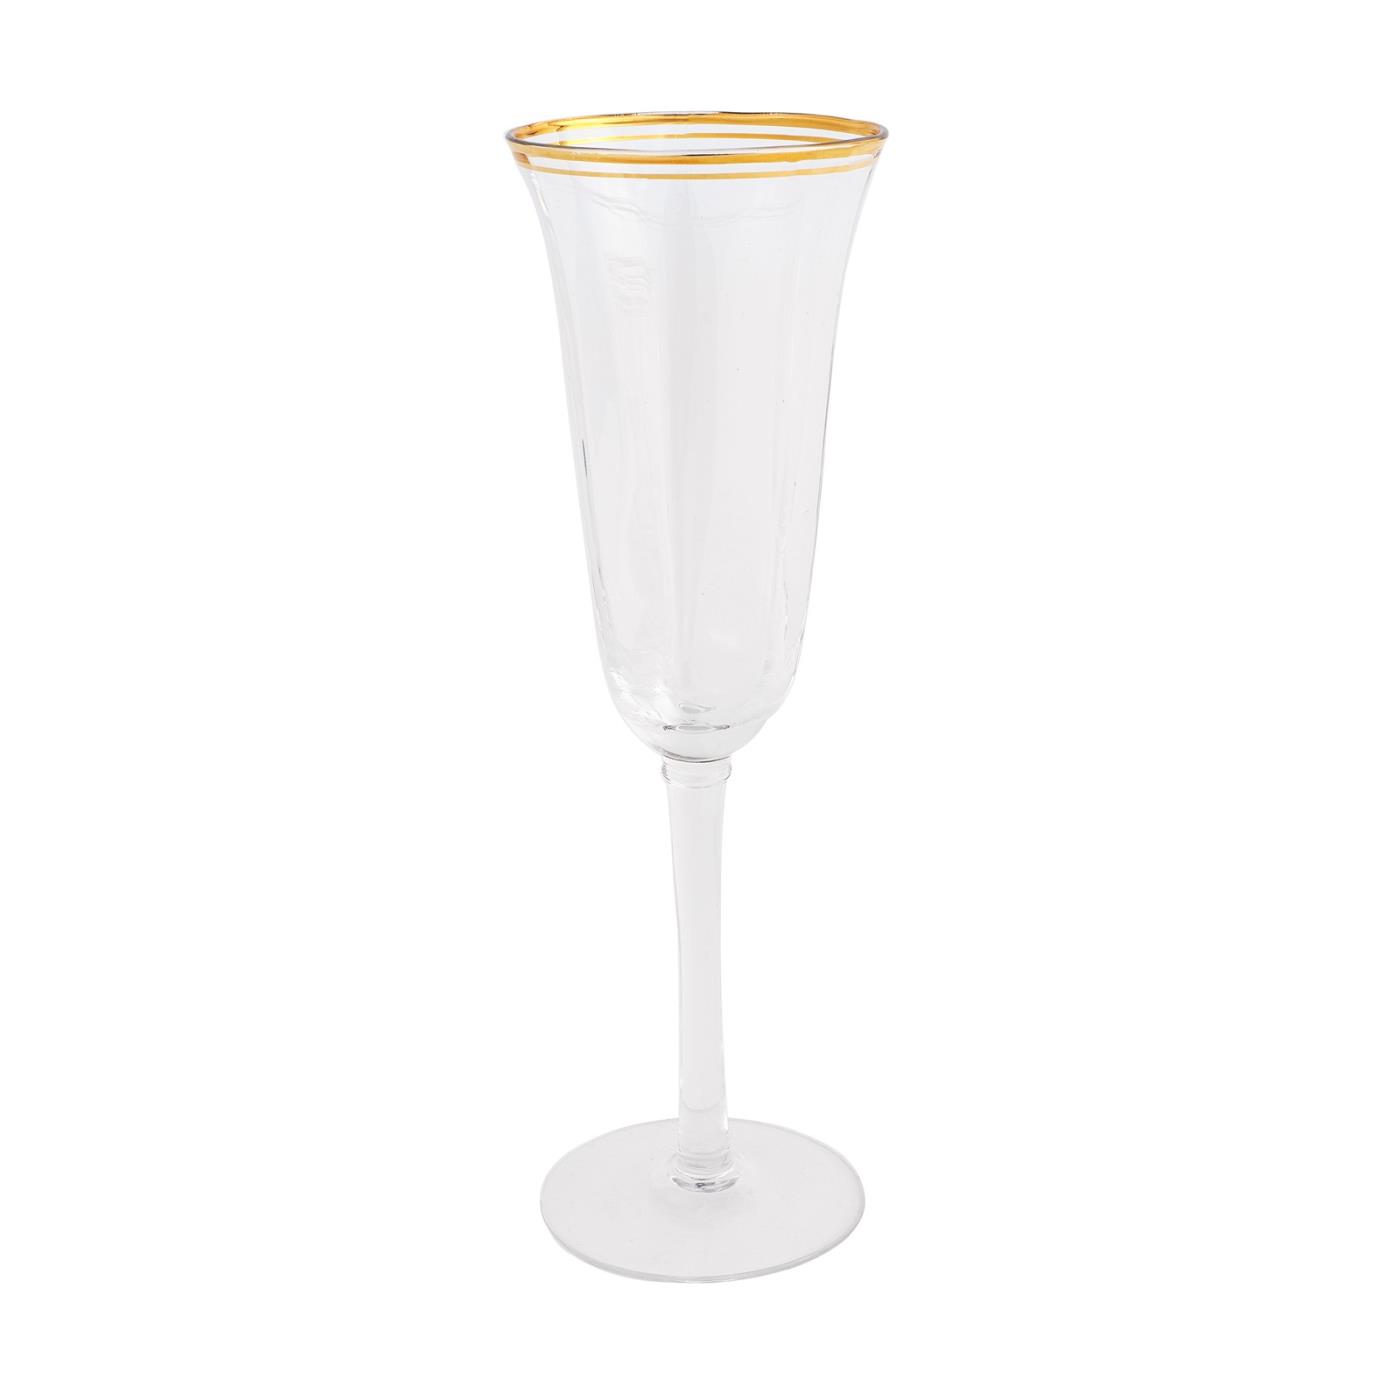 Windsor Gold - Champagne Flute 5.5 oz